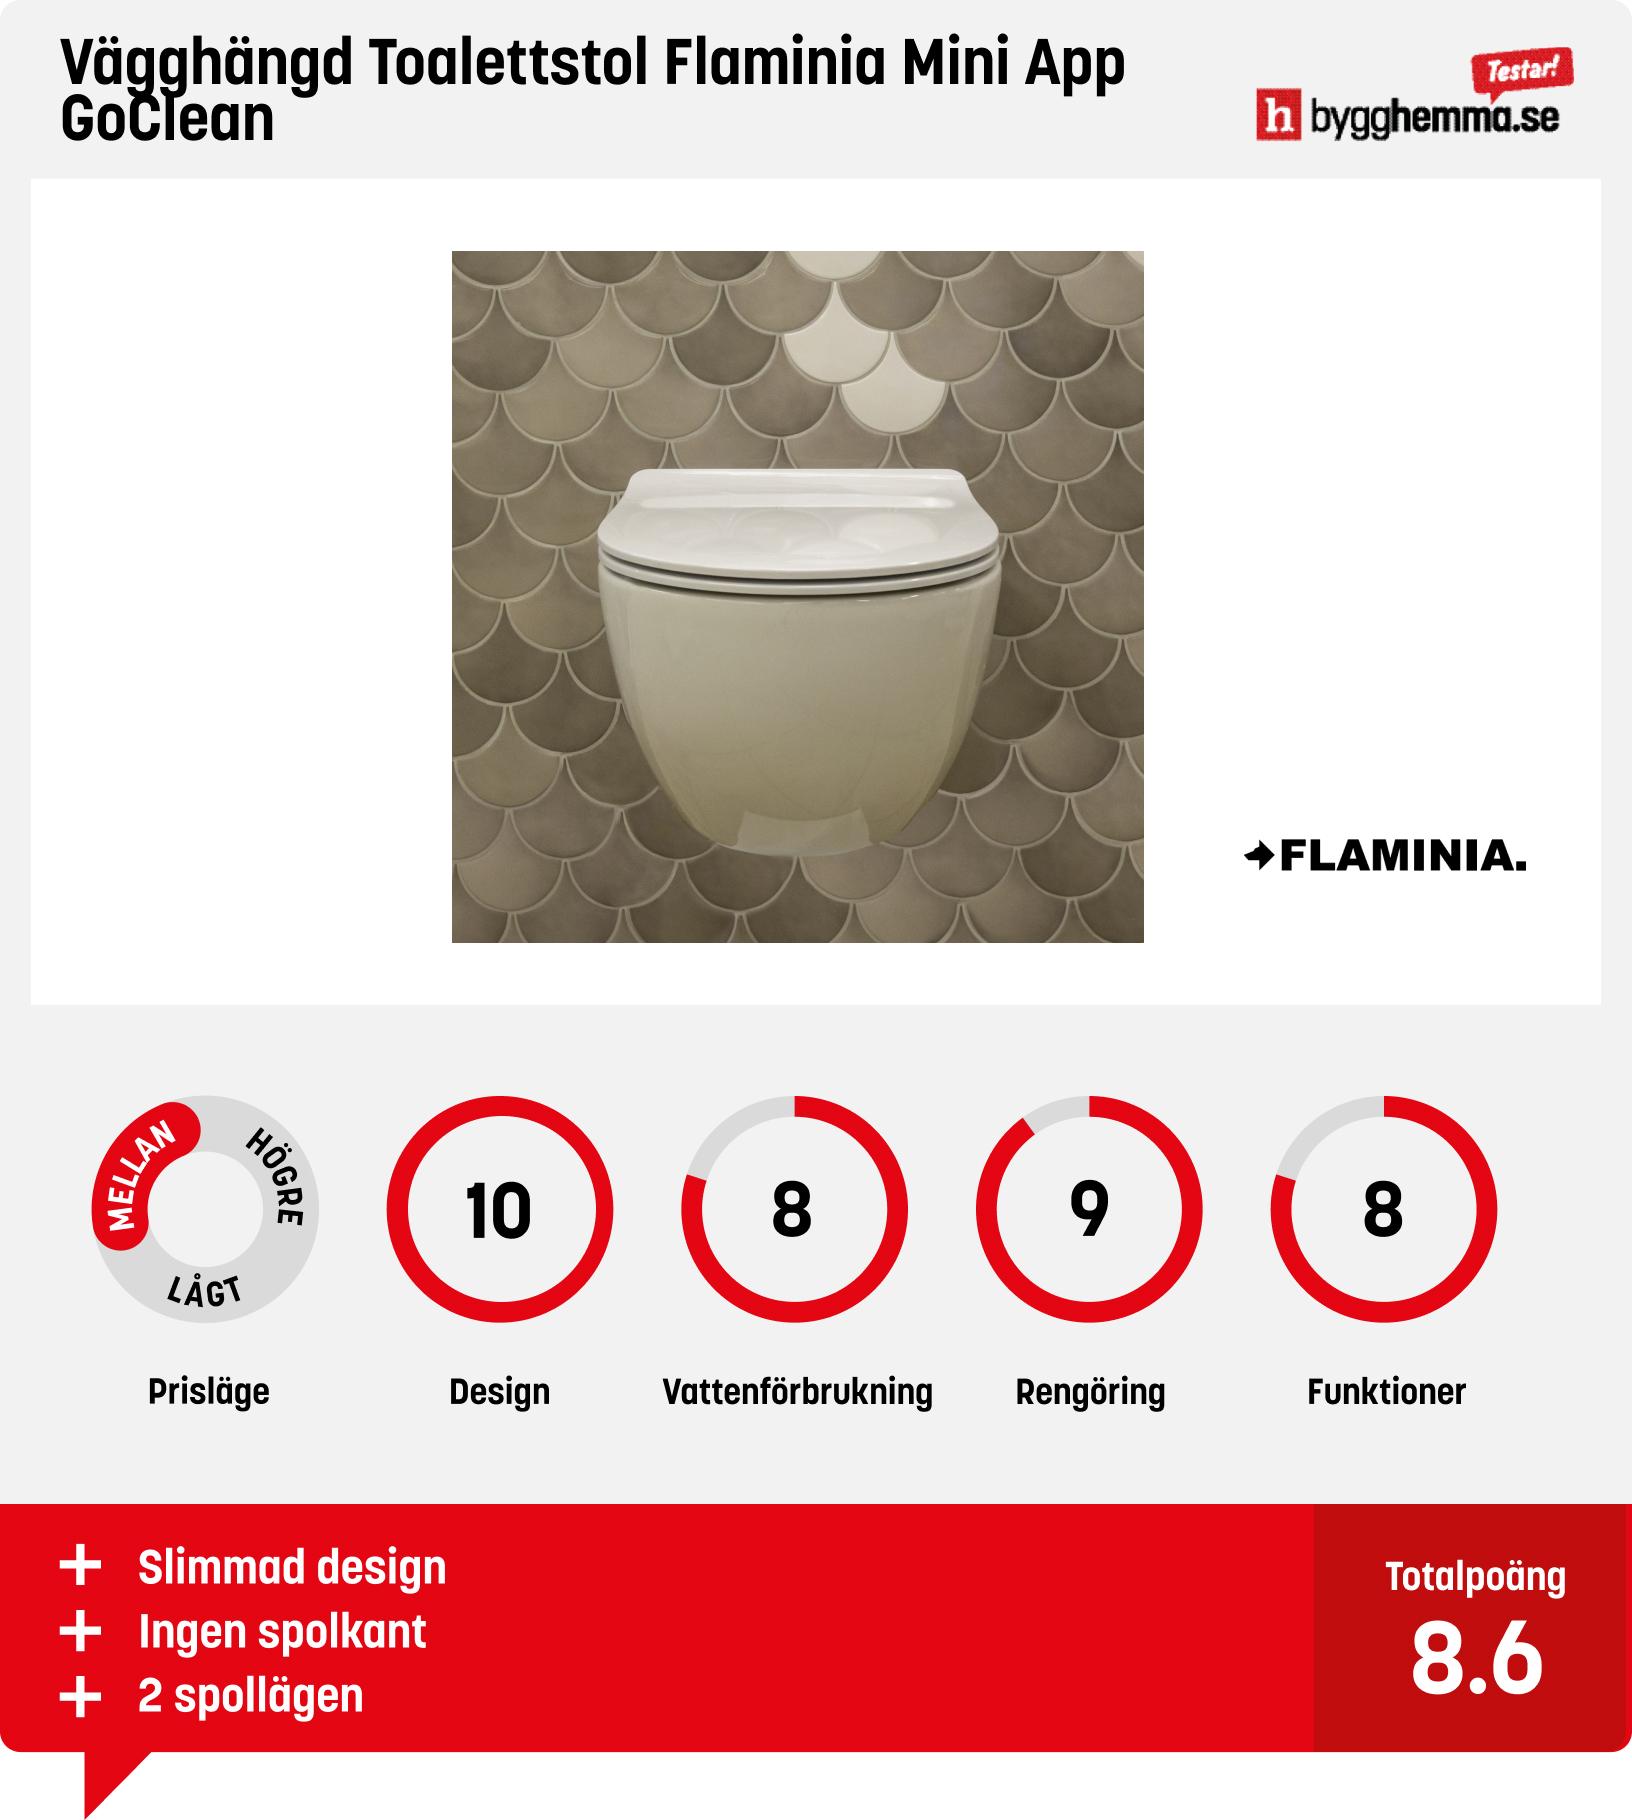 Vägghängd toalett bäst i test - Vägghängd Toalettstol Flaminia Mini App GoClean